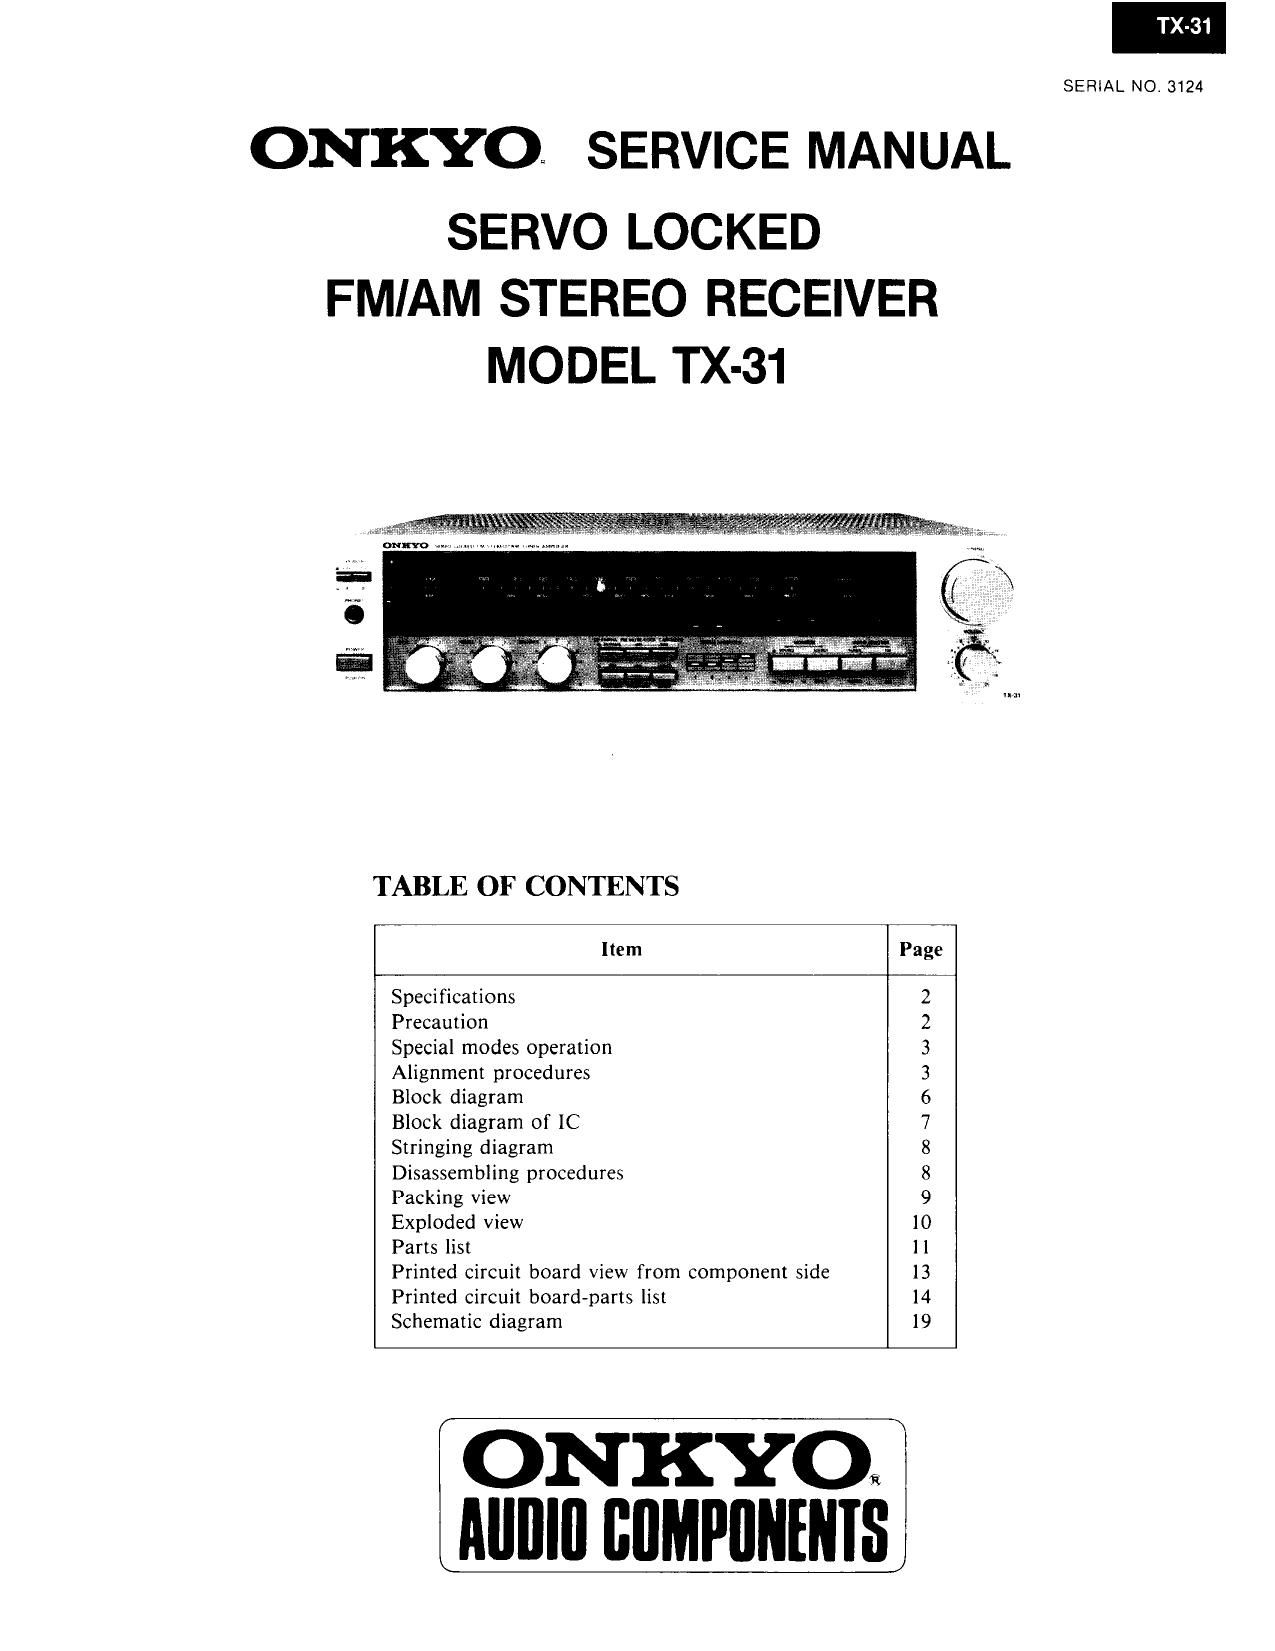 Onkyo TX 31 Service Manual